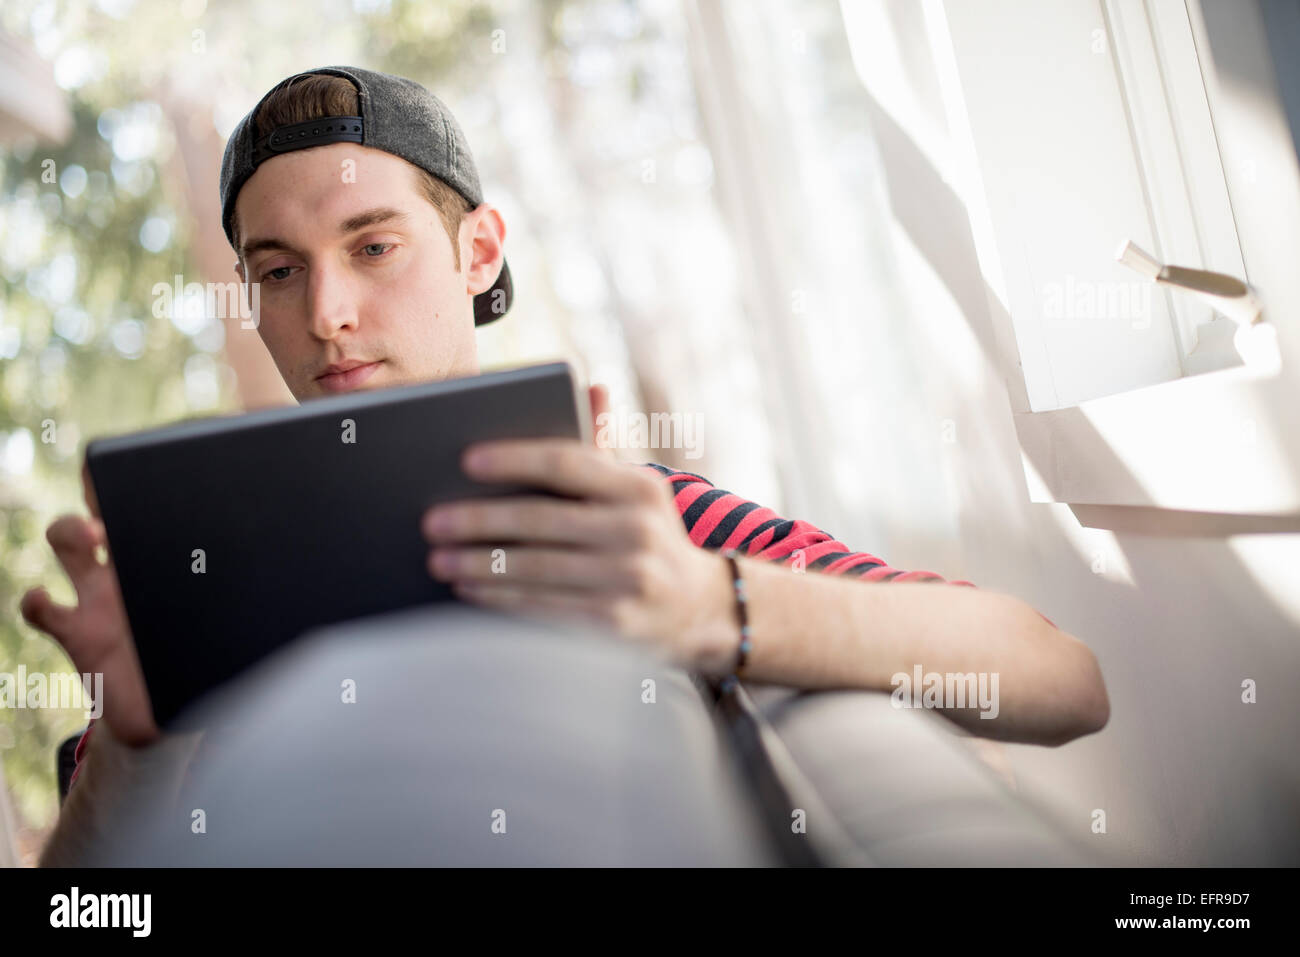 Homme portant une casquette de baseball en arrière, assise sur un canapé, regardant une tablette numérique. Banque D'Images